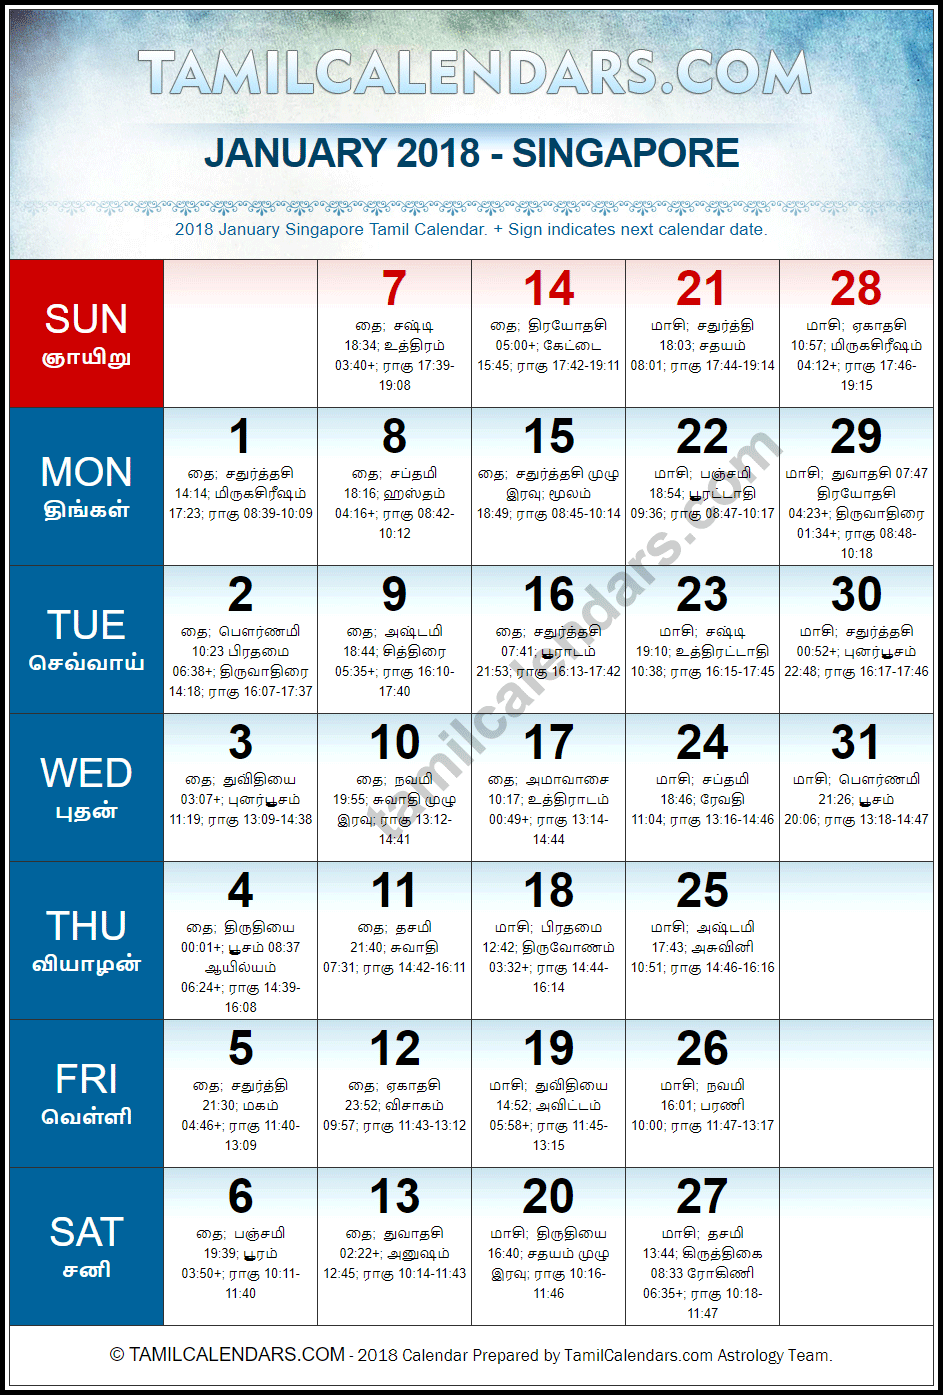 January 2018 Tamil Calendar for Singapore